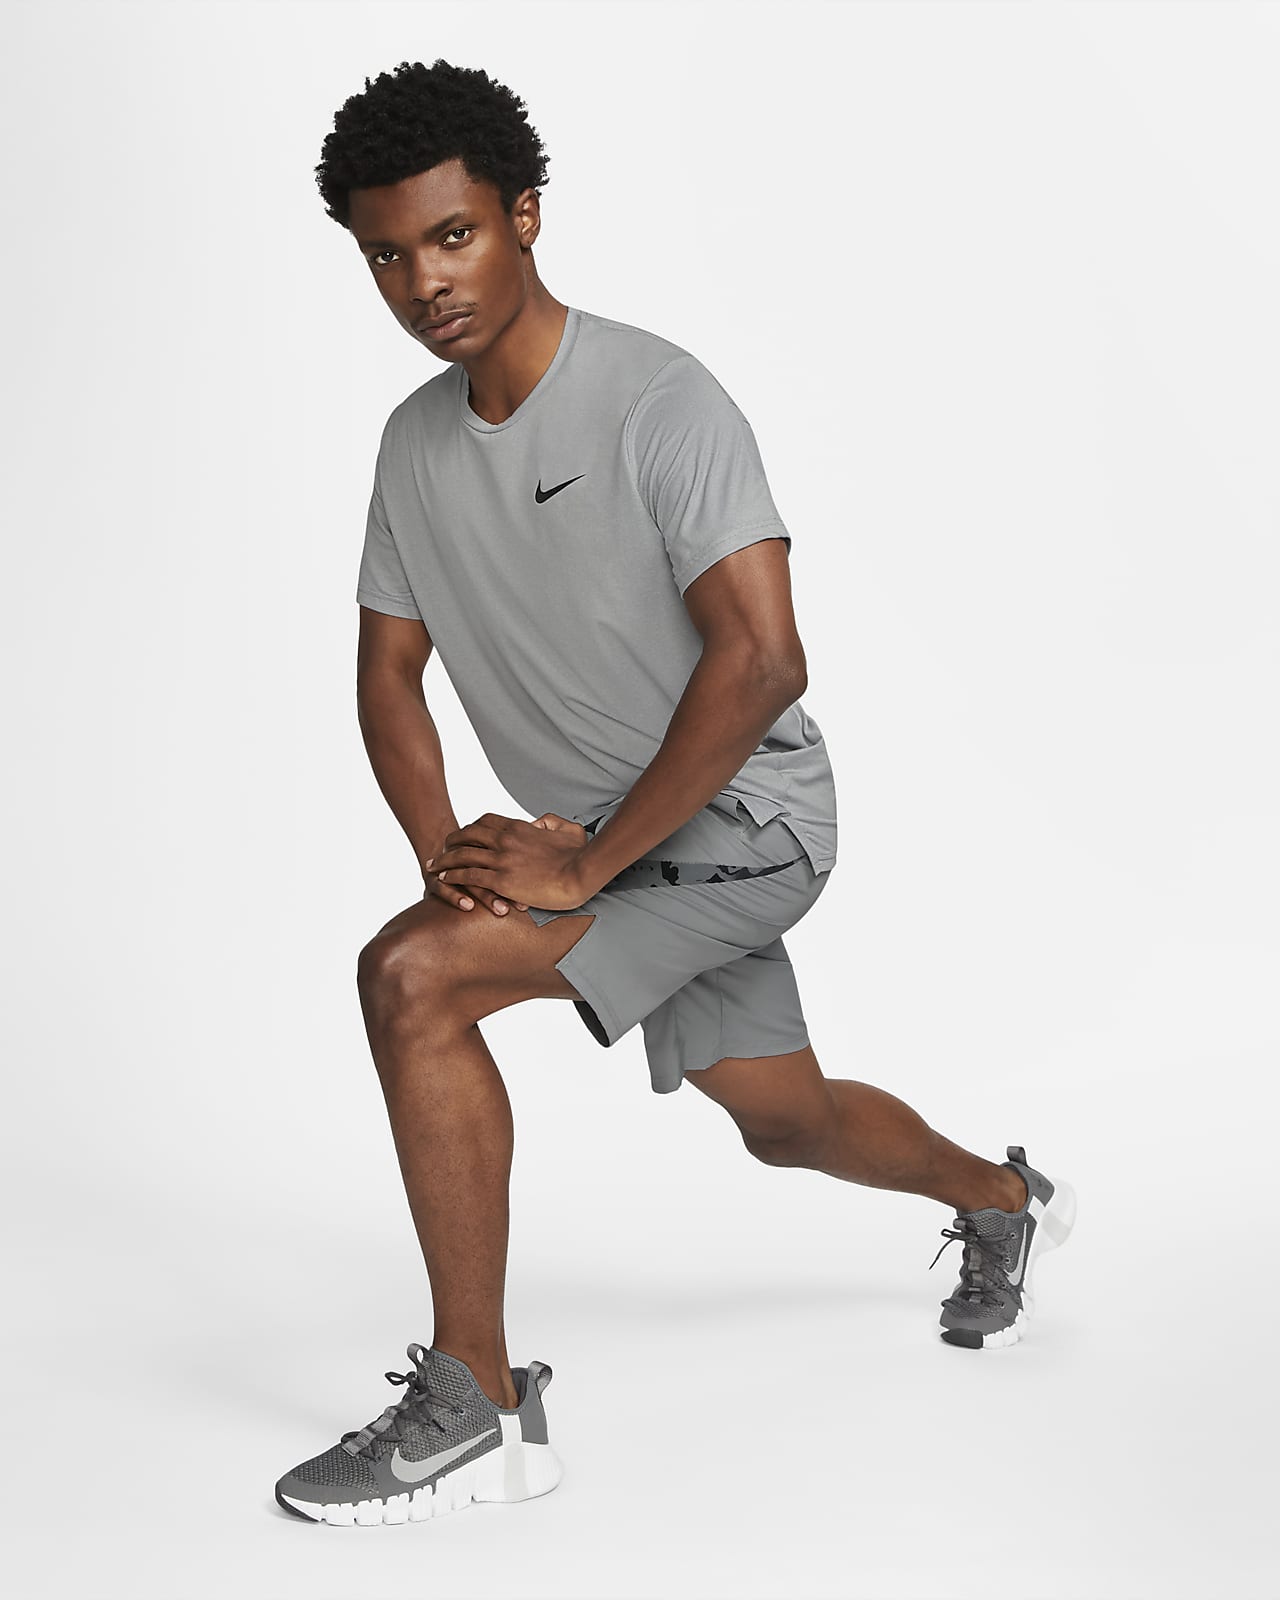 Aanbevolen Daarbij journalist Nike Pro Dri-FIT Men's Short-Sleeve Top. Nike.com